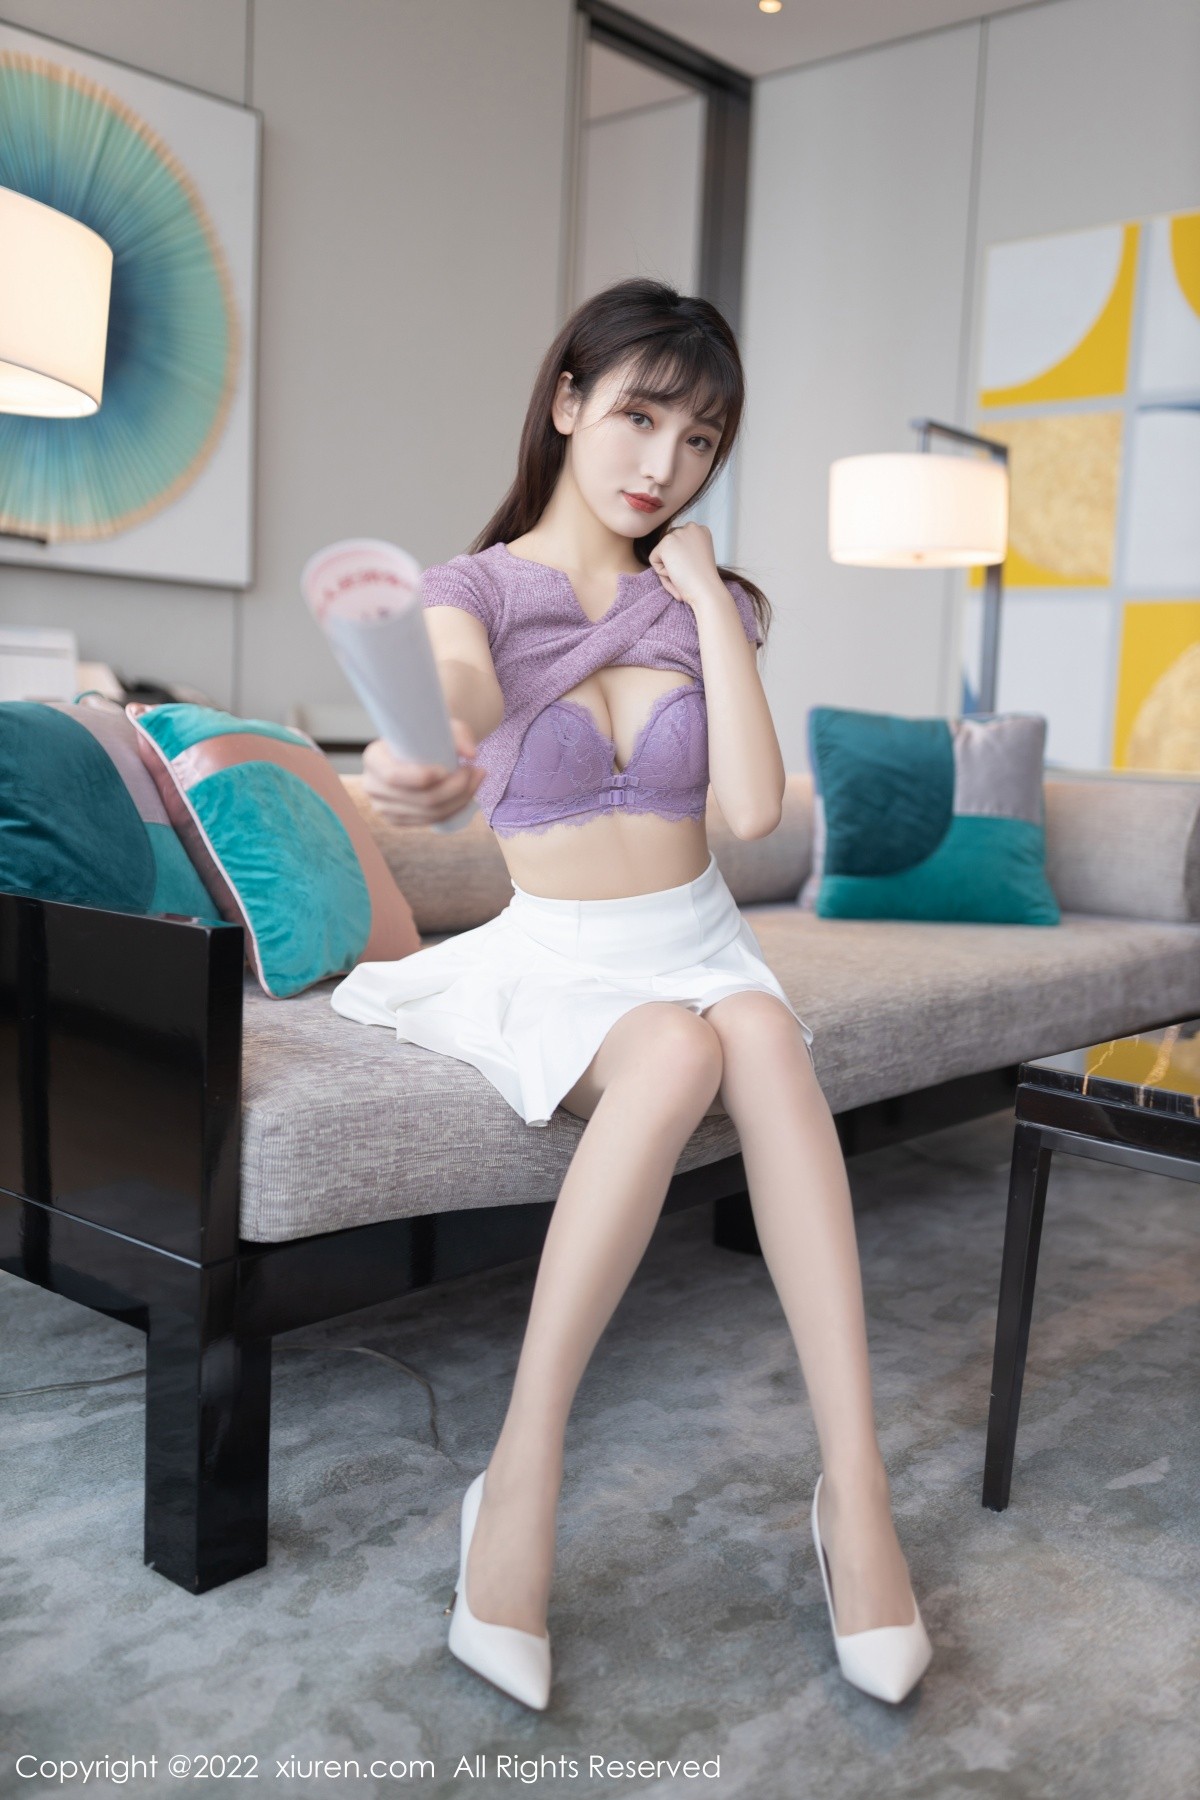 模特陆萱萱角色扮演主题紫色上衣半脱露紫色内衣撩人诱惑写真